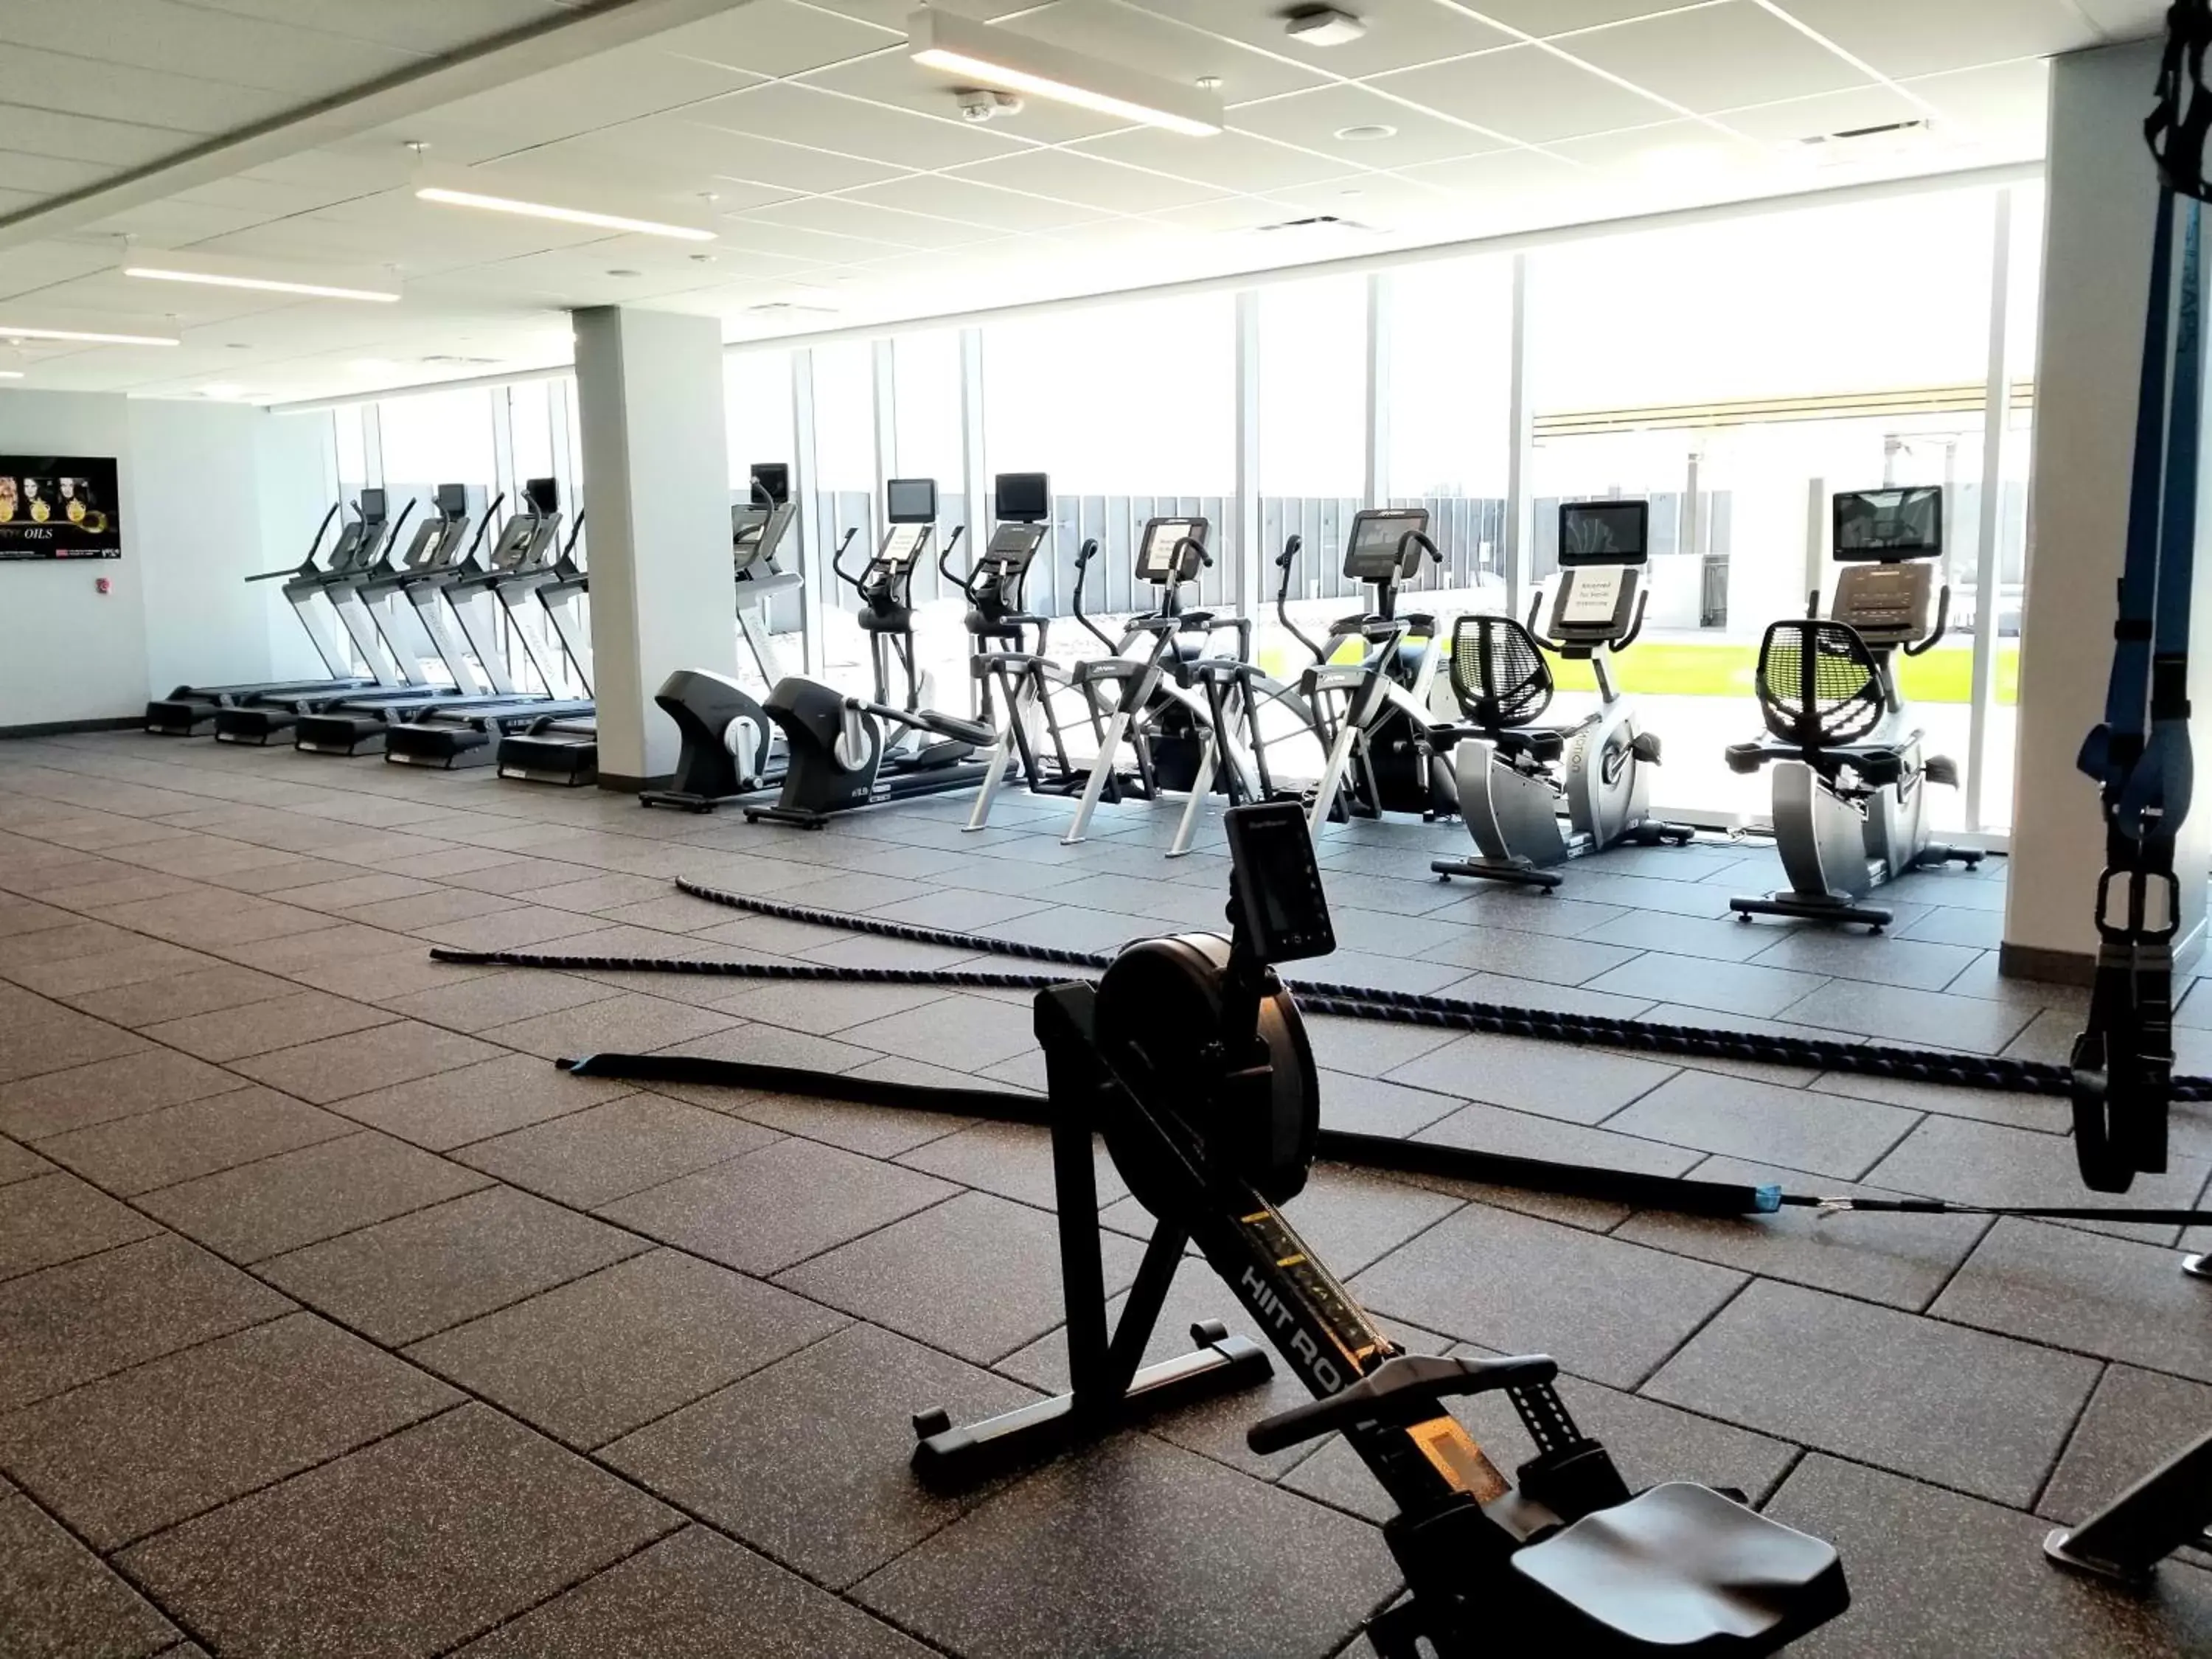 Fitness centre/facilities, Fitness Center/Facilities in Hyatt Regency Frisco-Dallas